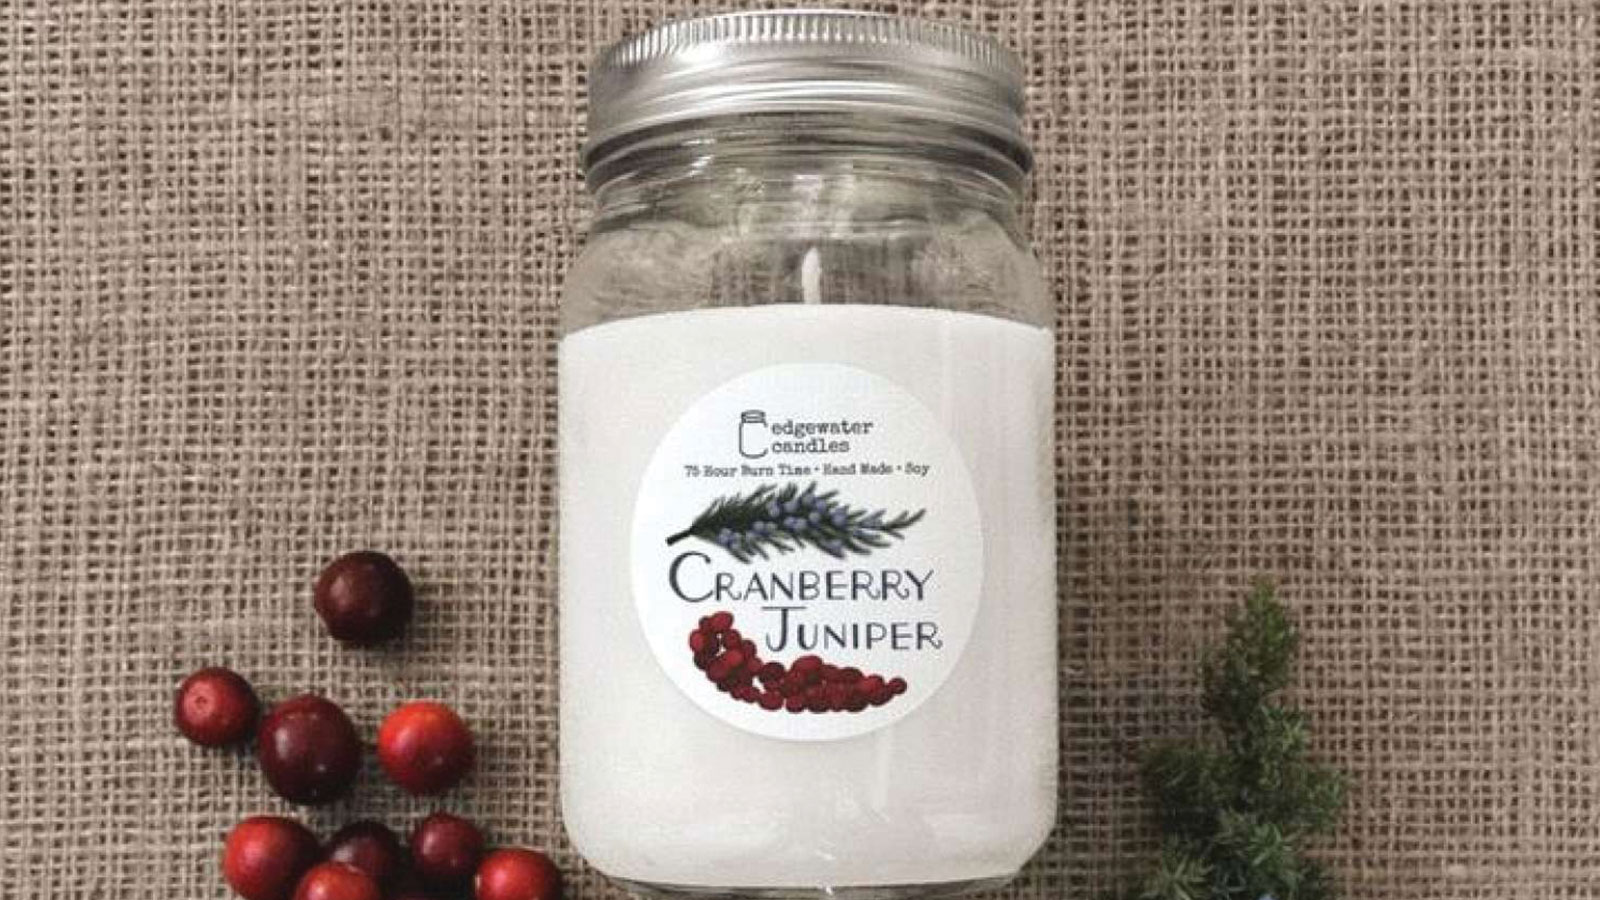 Cranberry Juniper candle